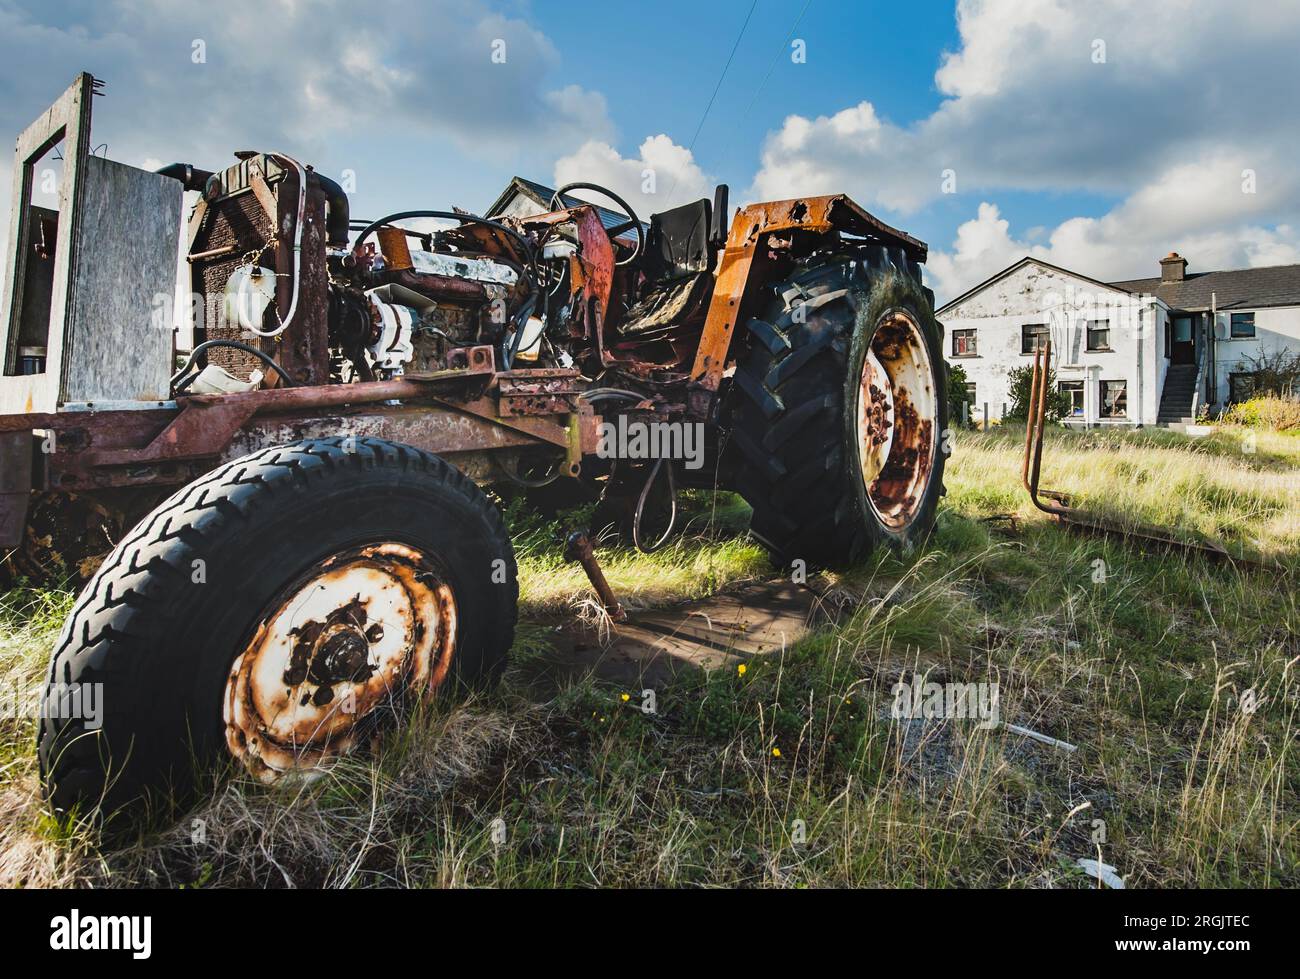 Alter Traktor mit fehlenden Karosserieteilen, da rostige Motor- und mechanische Teile sichtbar sind. Ein aufgegebenes landwirtschaftliches Fahrzeug vermittelt einen Rückgang des Anbaus Stockfoto